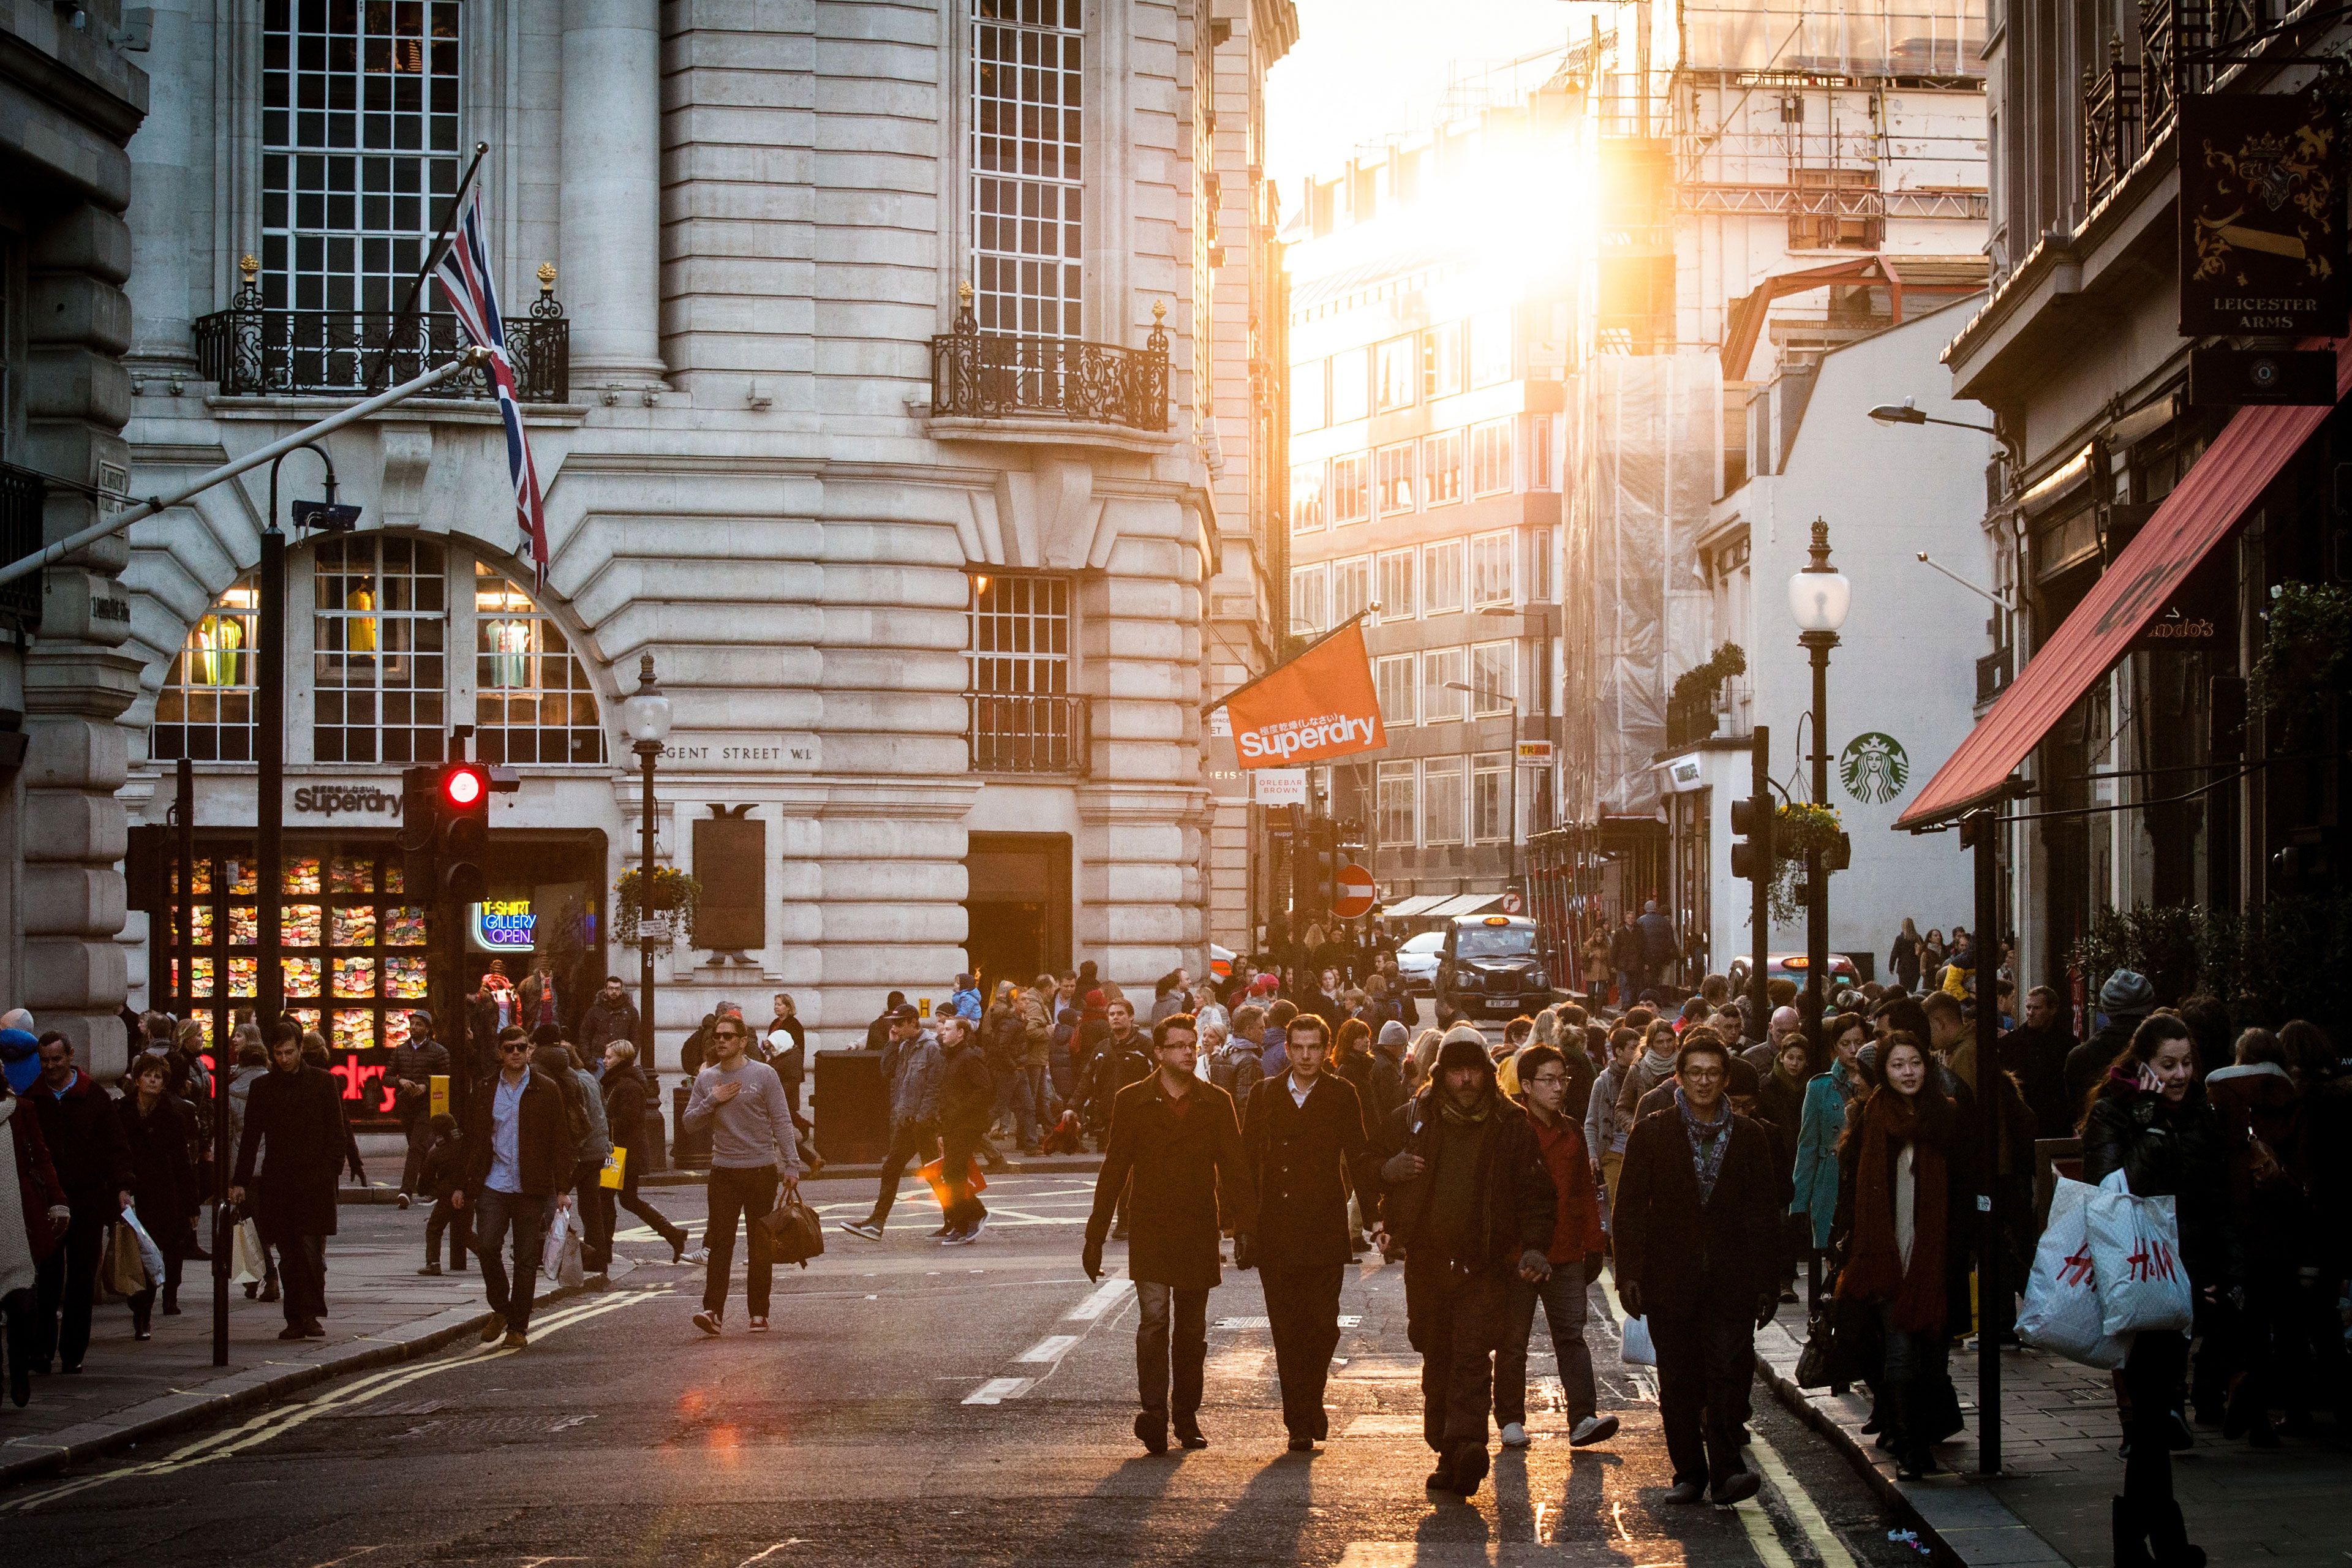 People walking through London